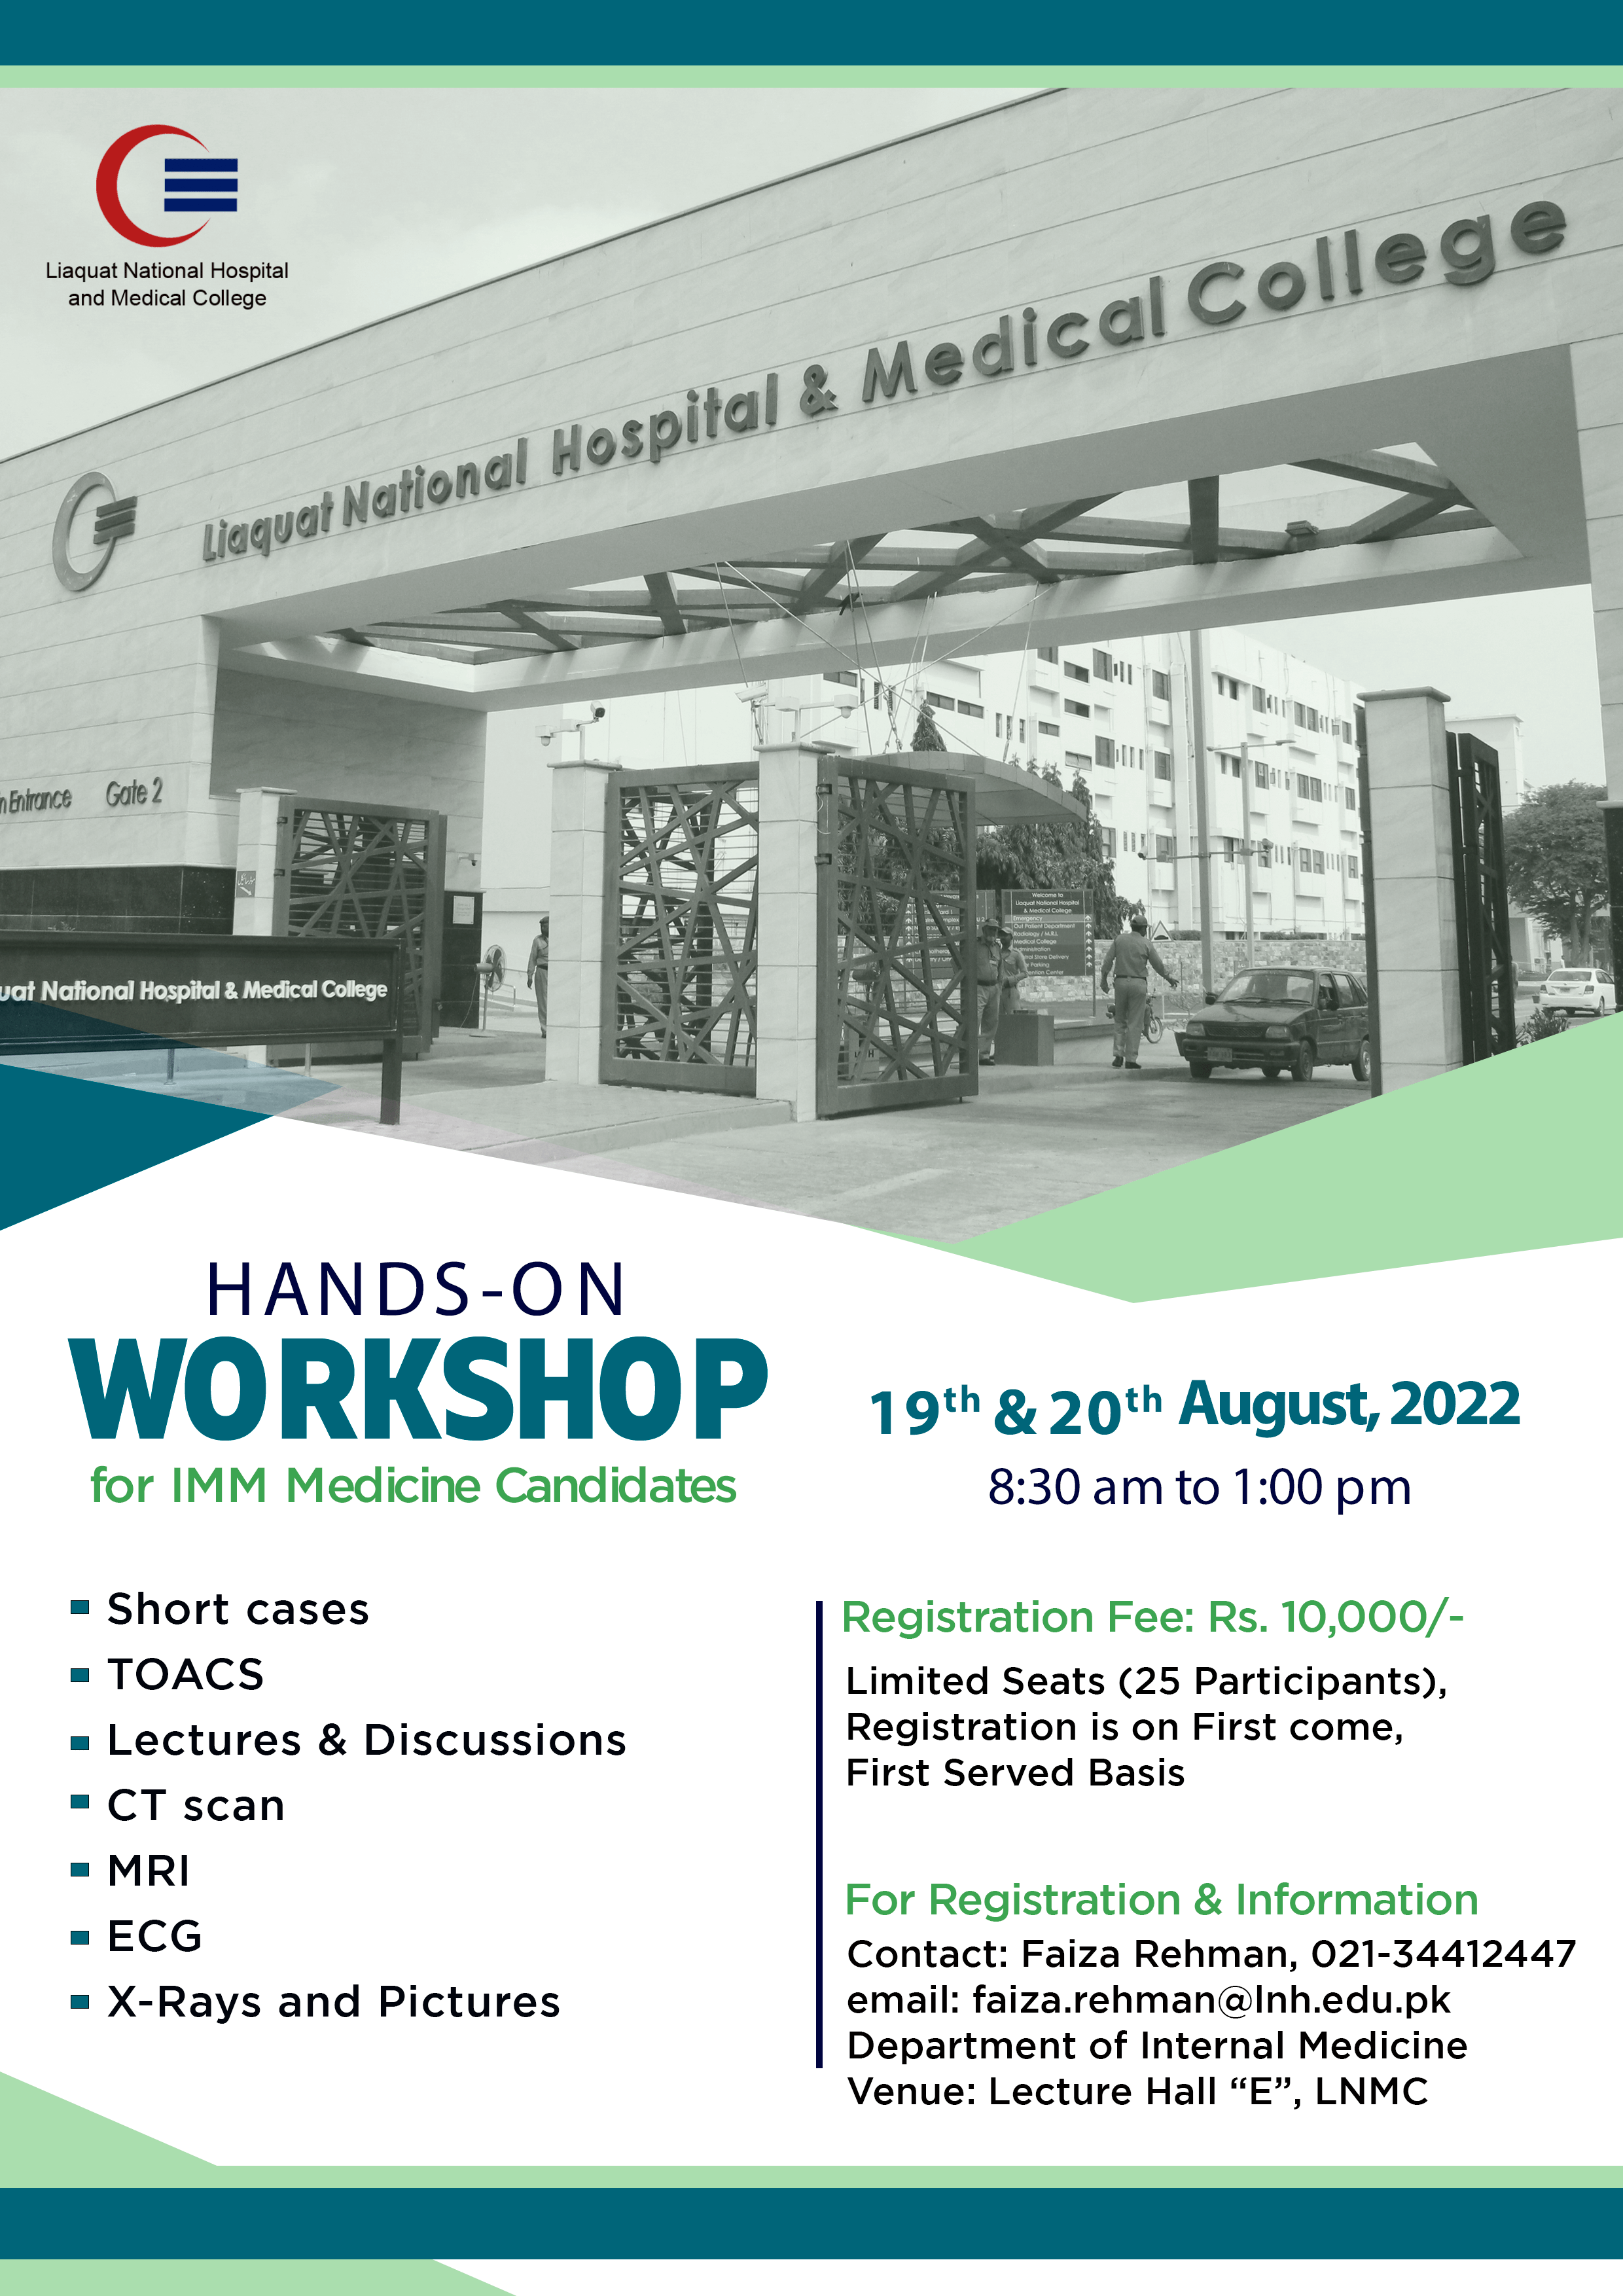 Hands-on Workshop for IMM Medicine Candidates